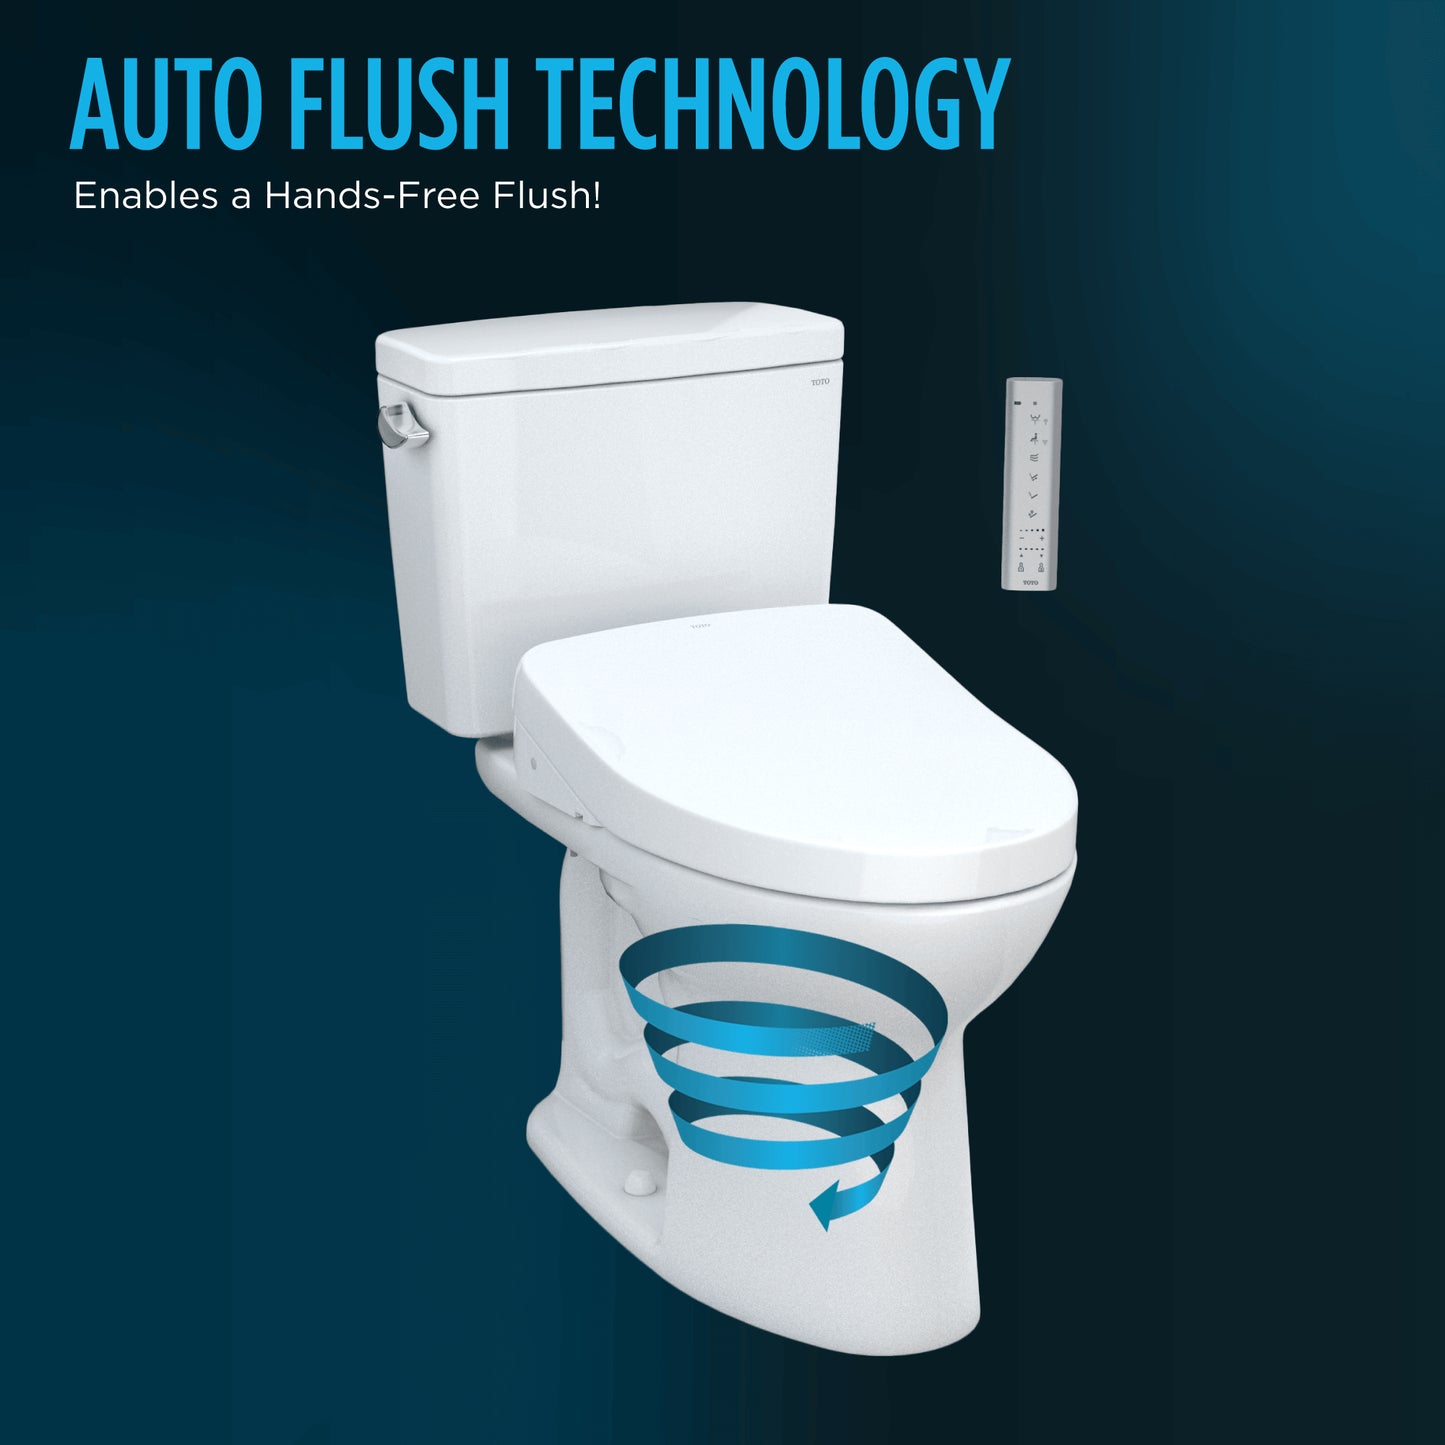 TOTO Drake WASHLET+ Two-Piece 1.6 GPF Standard Height Toilet with S500e Bidet Seat and Auto Flush - MW7763046CSGA#01